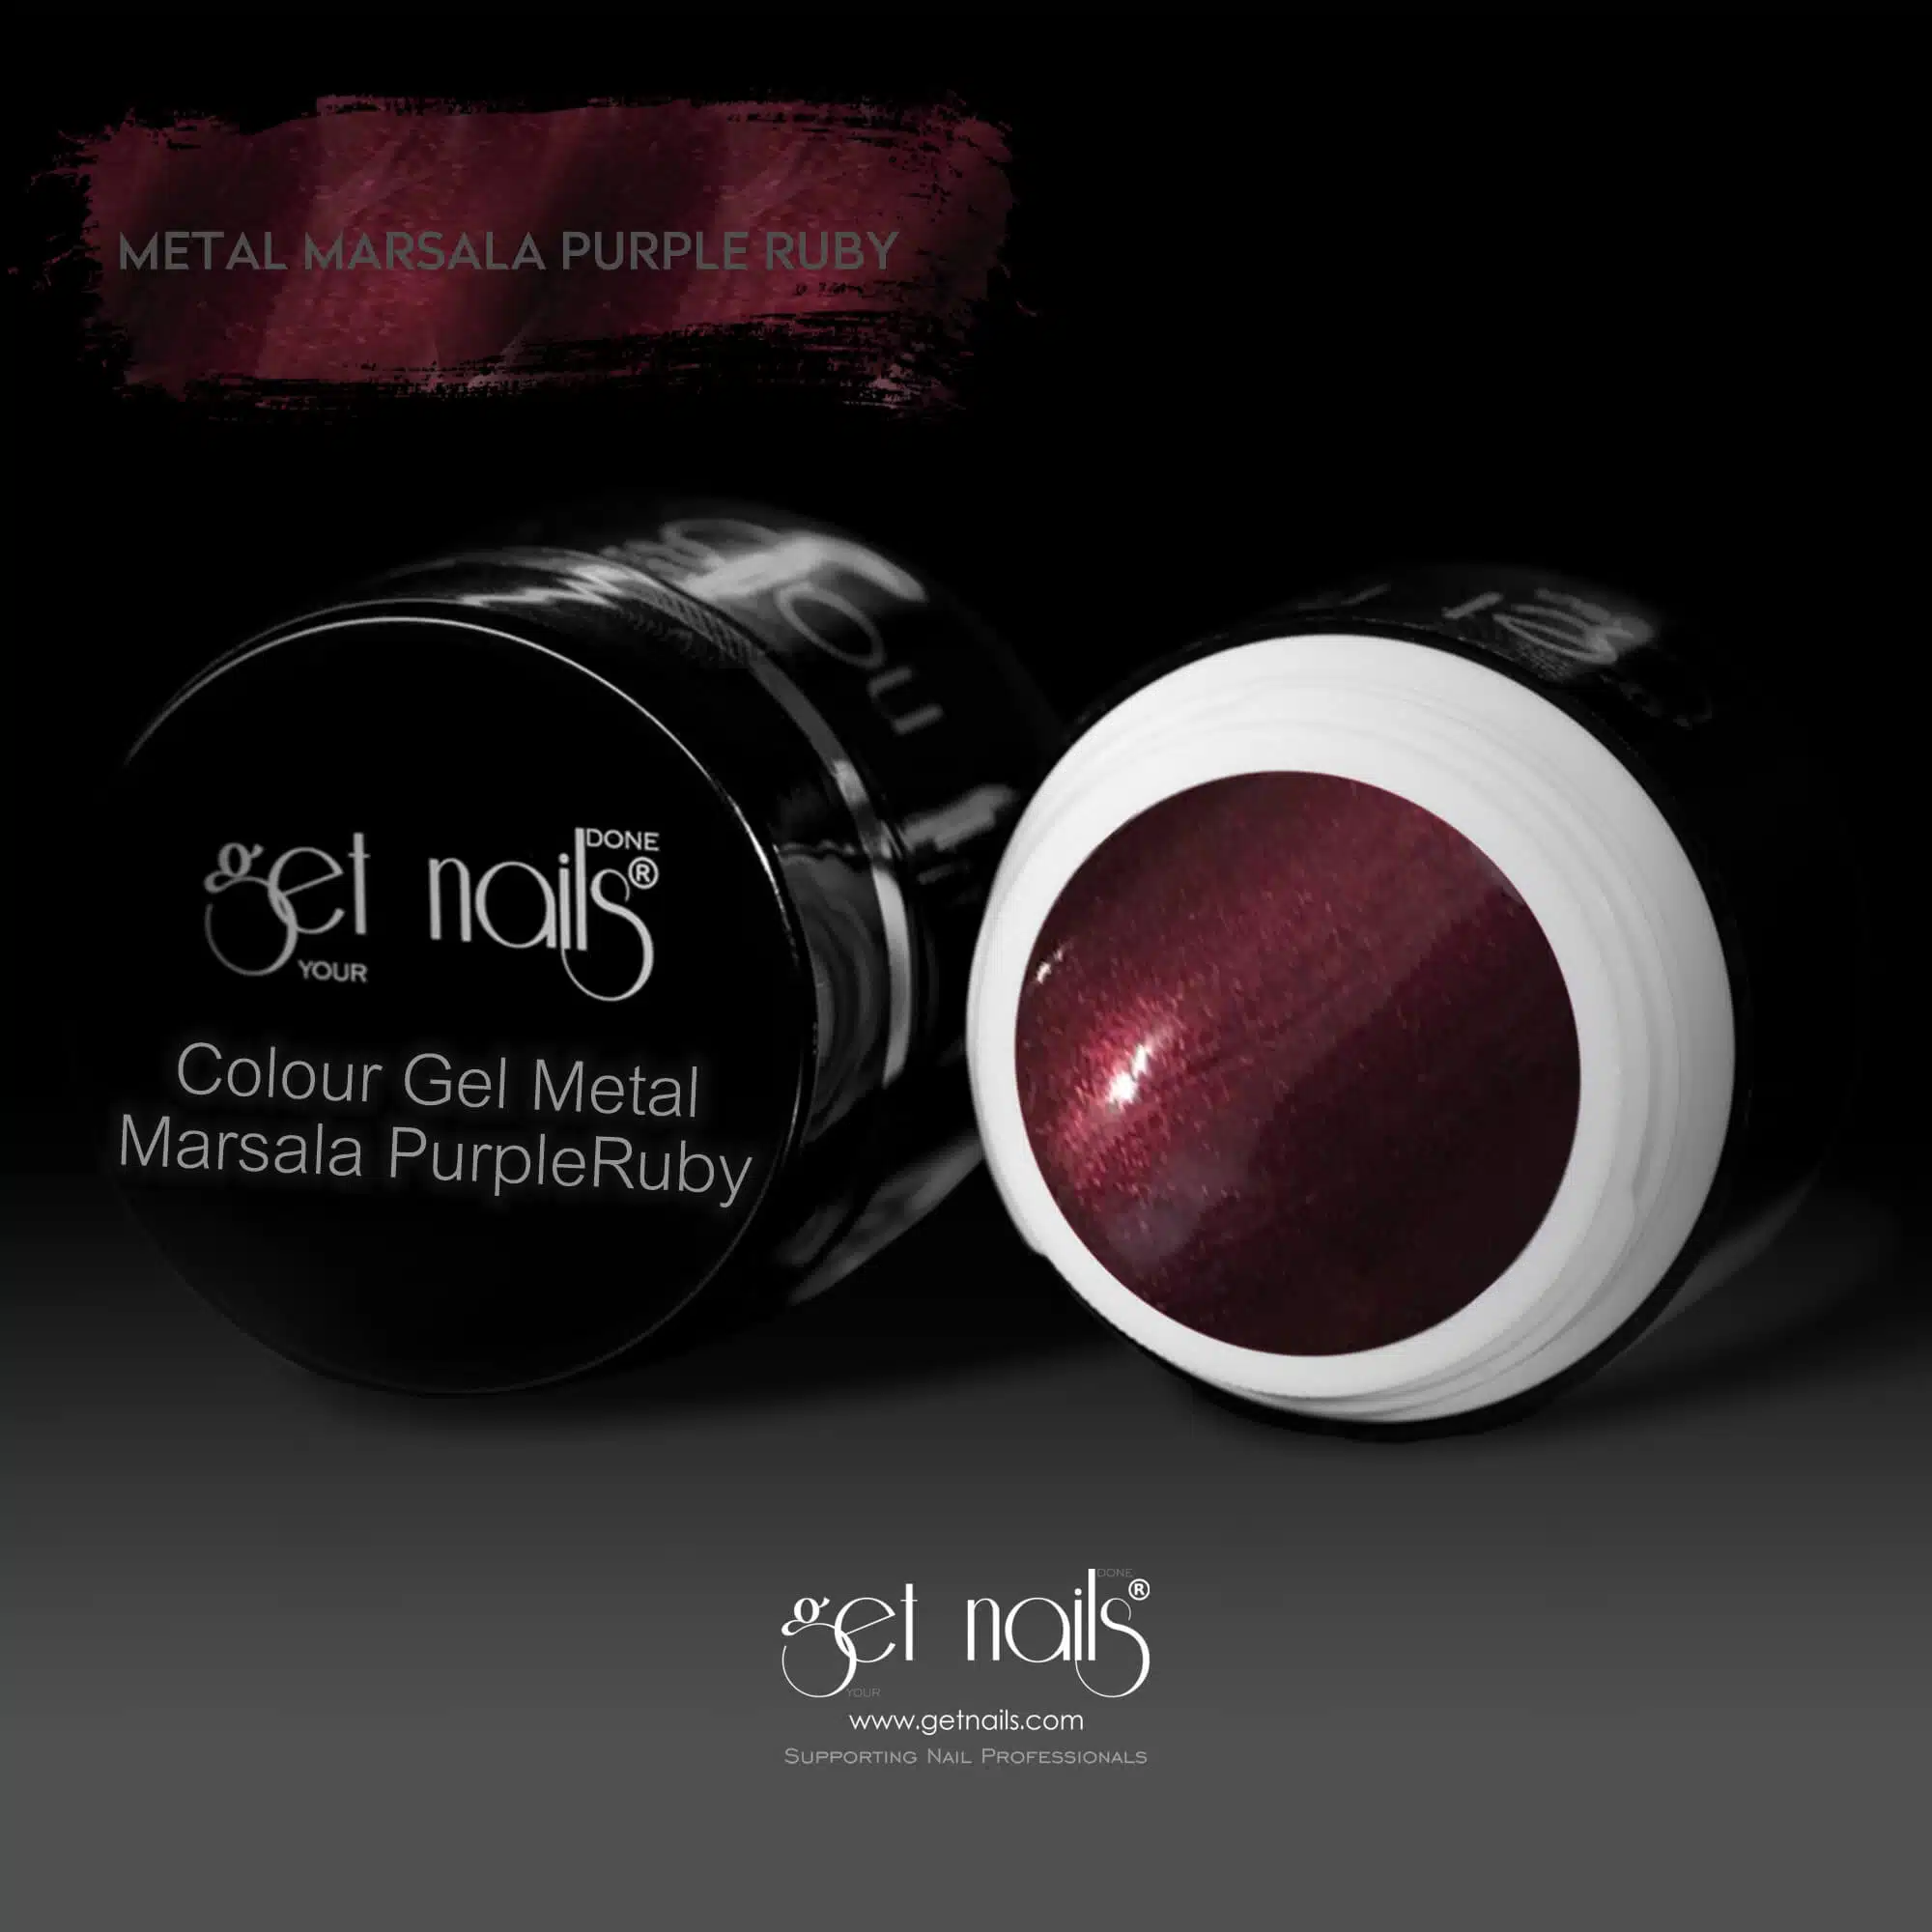 Get Nails Austria - Цветной гель металлик Марсала Фиолетовый Рубиновый 5г